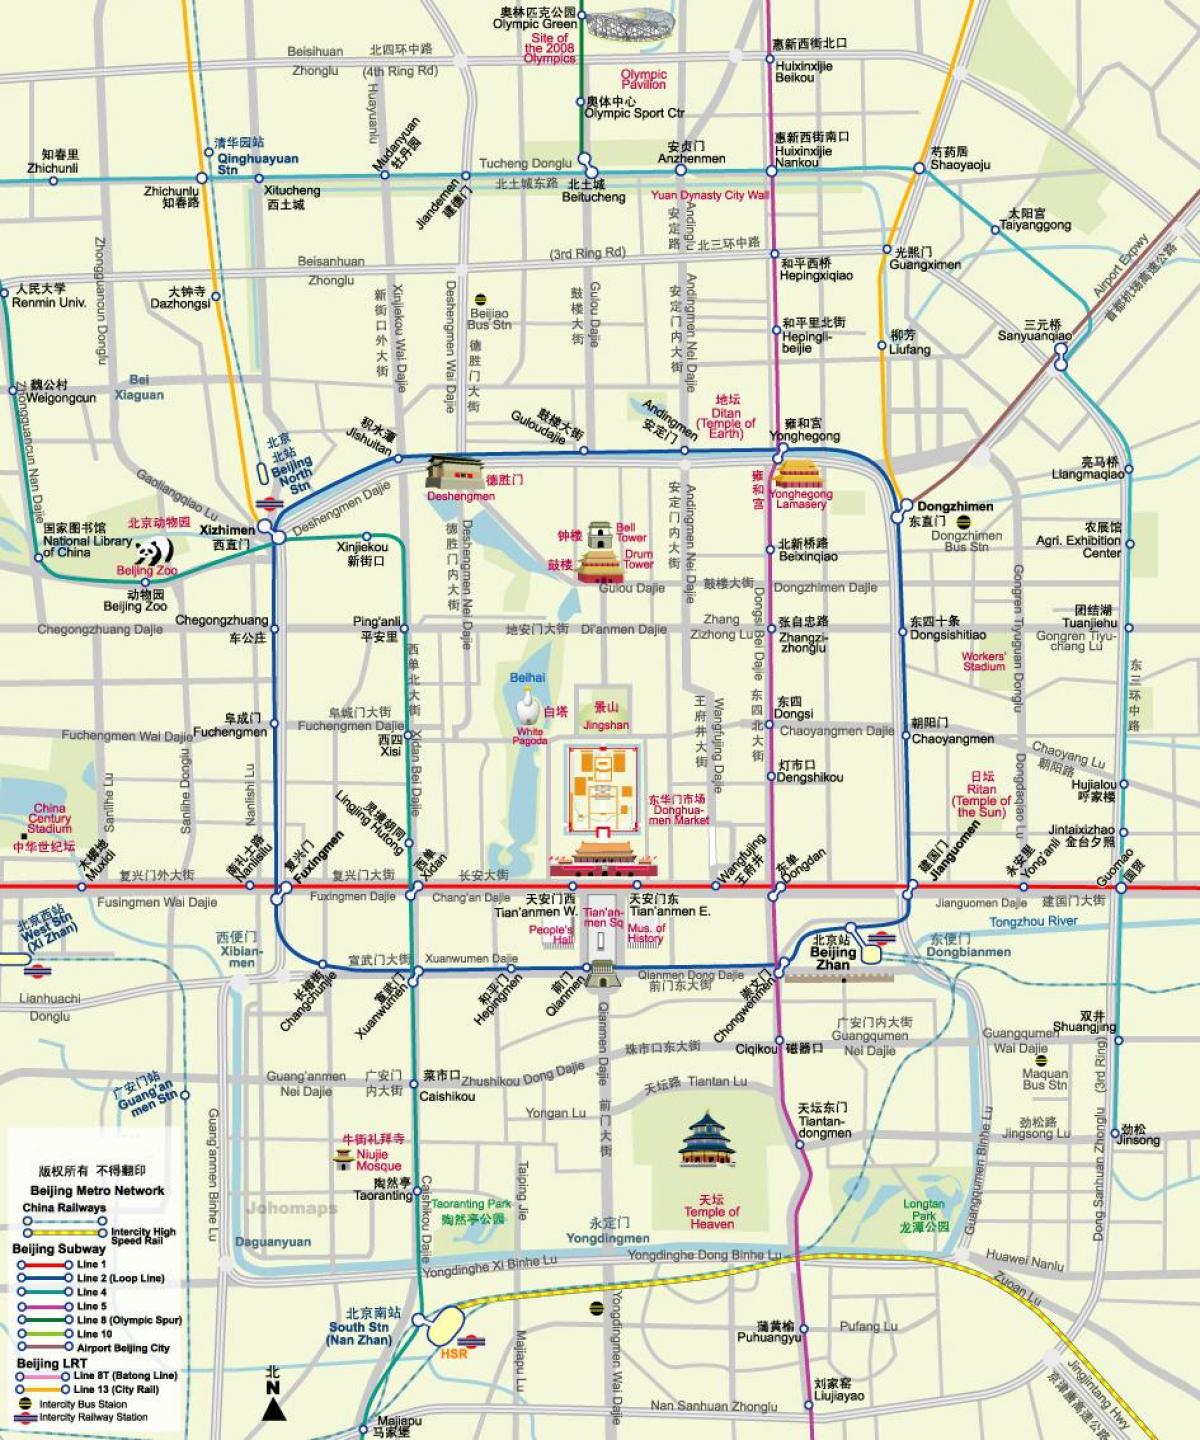 χάρτης του Πεκίνου στο μετρό χάρτης με τα τουριστικά αξιοθέατα